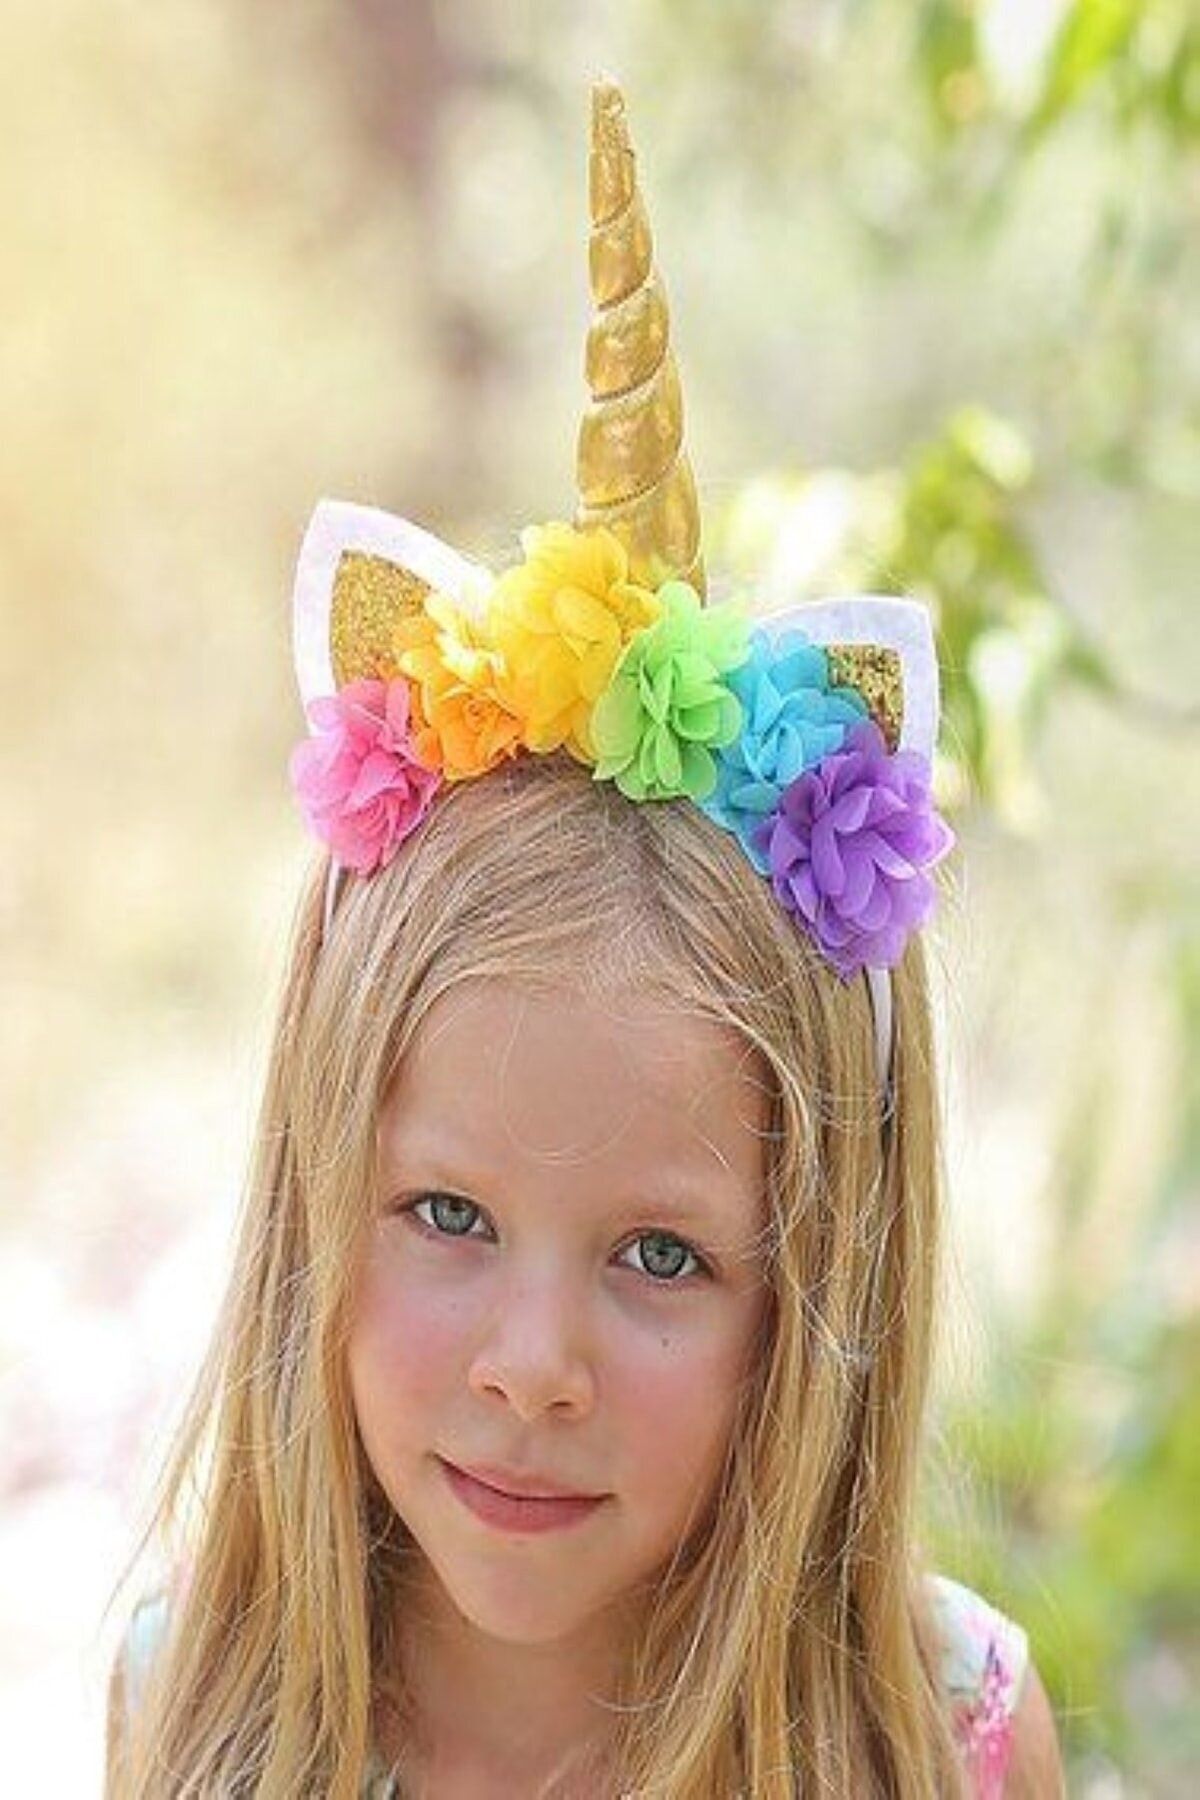 bba new trend Unicorn Taç Özel Tasarım Kız Çocuk Doğum Günü Saç Aksesuarı